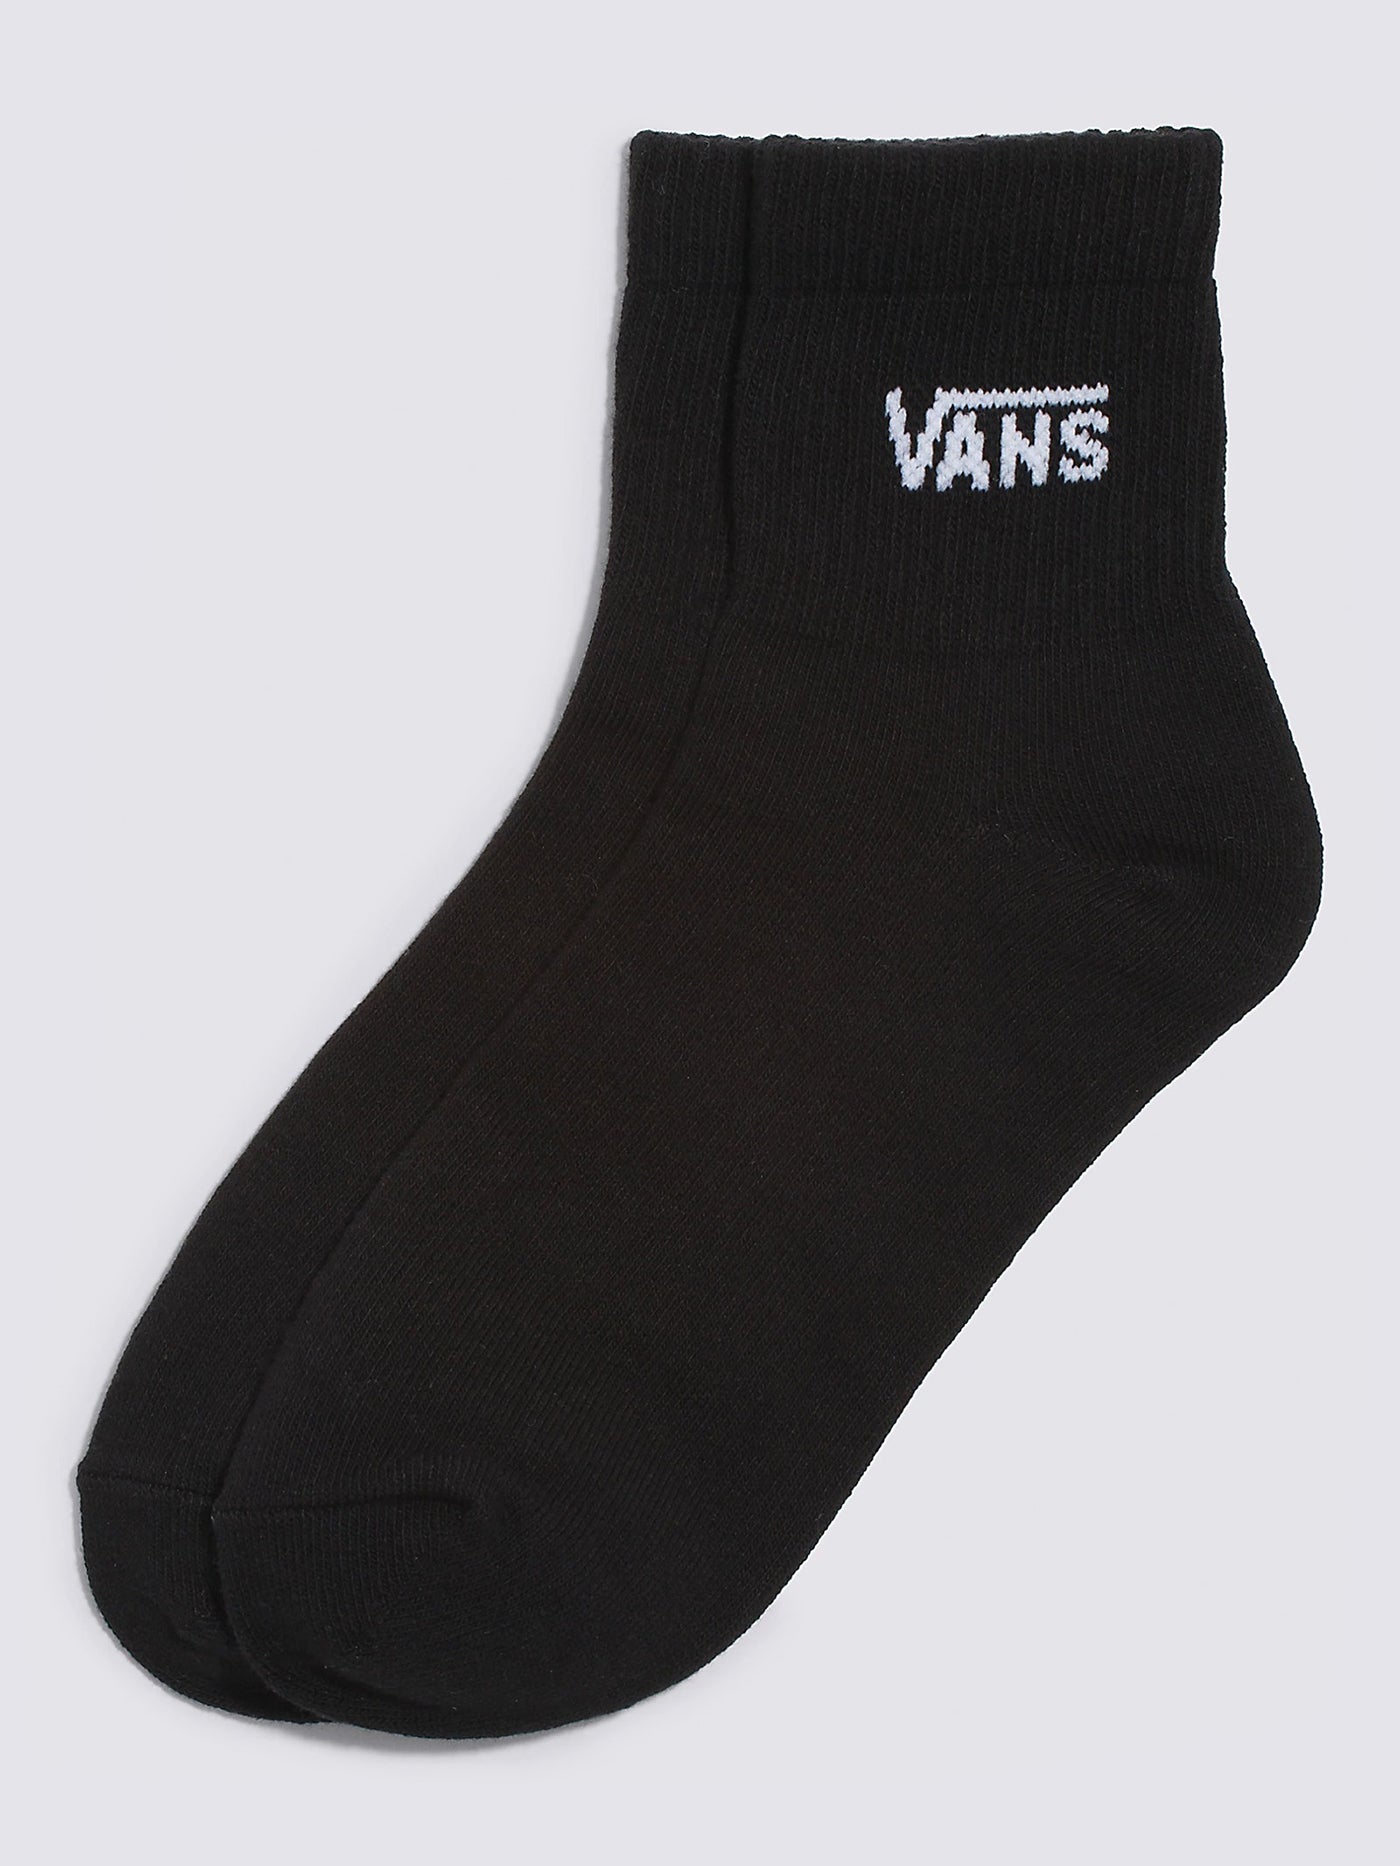 Vans Half Crew Socks